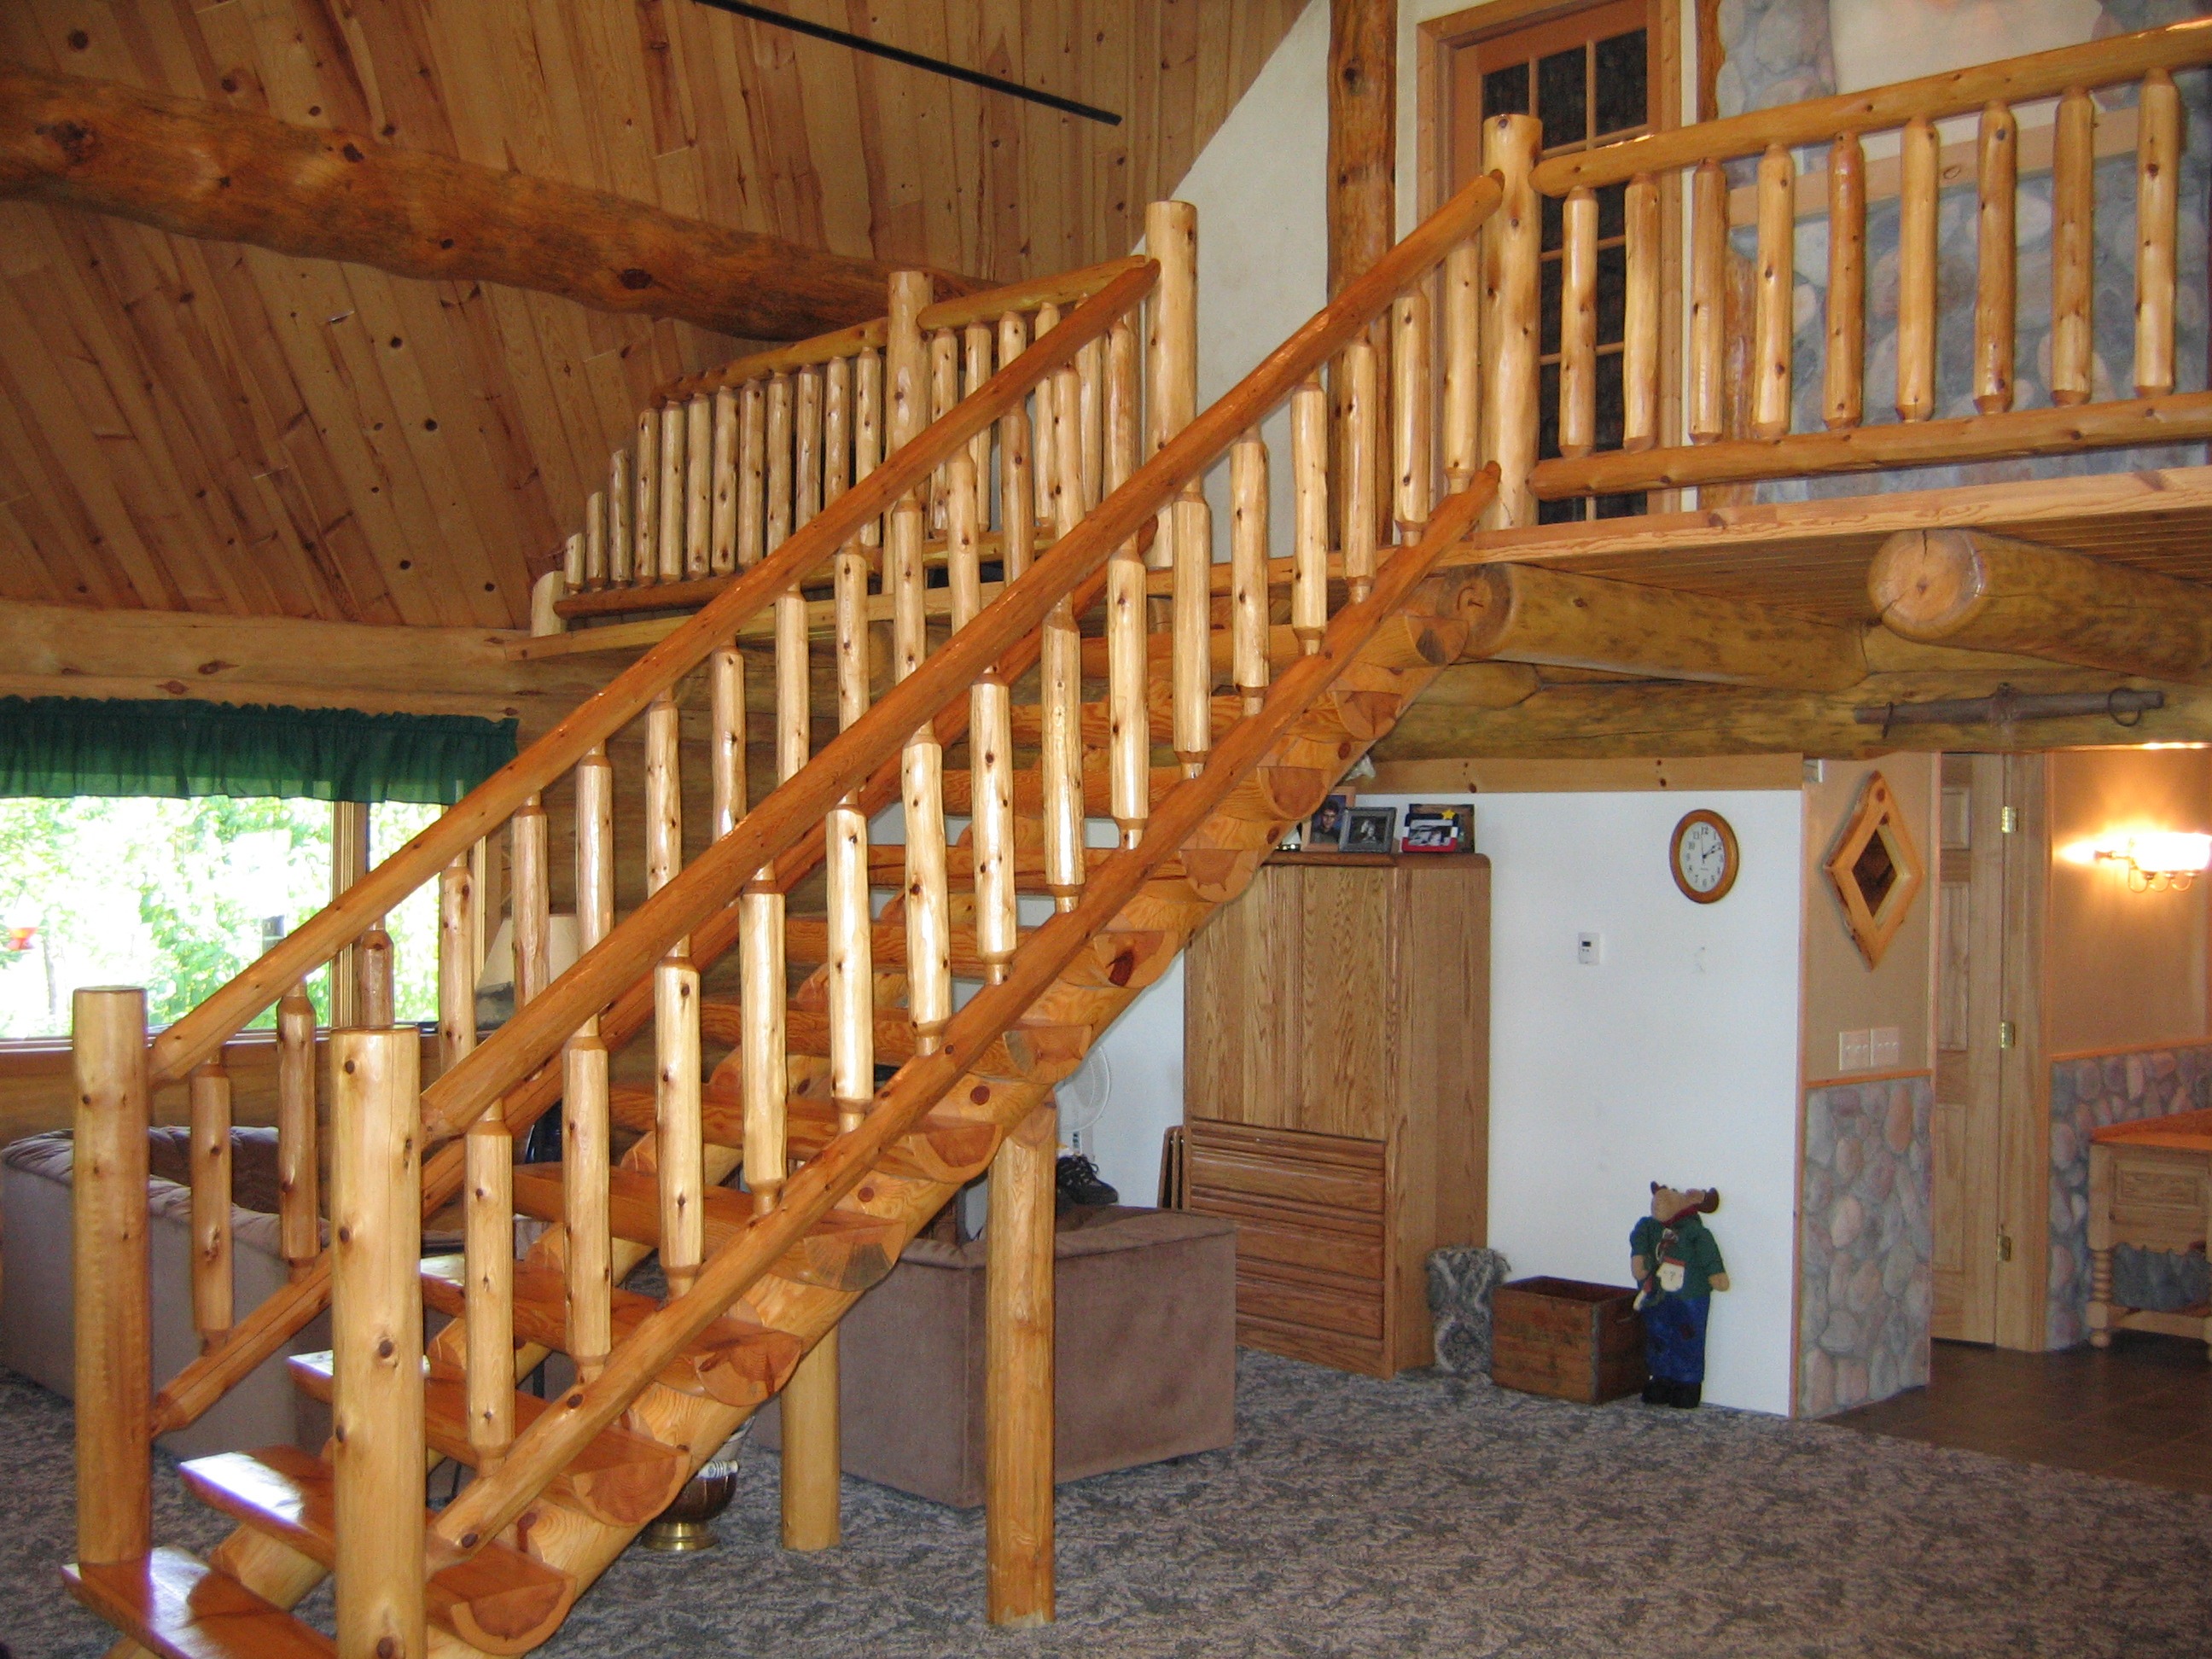 Interior wooden stairway